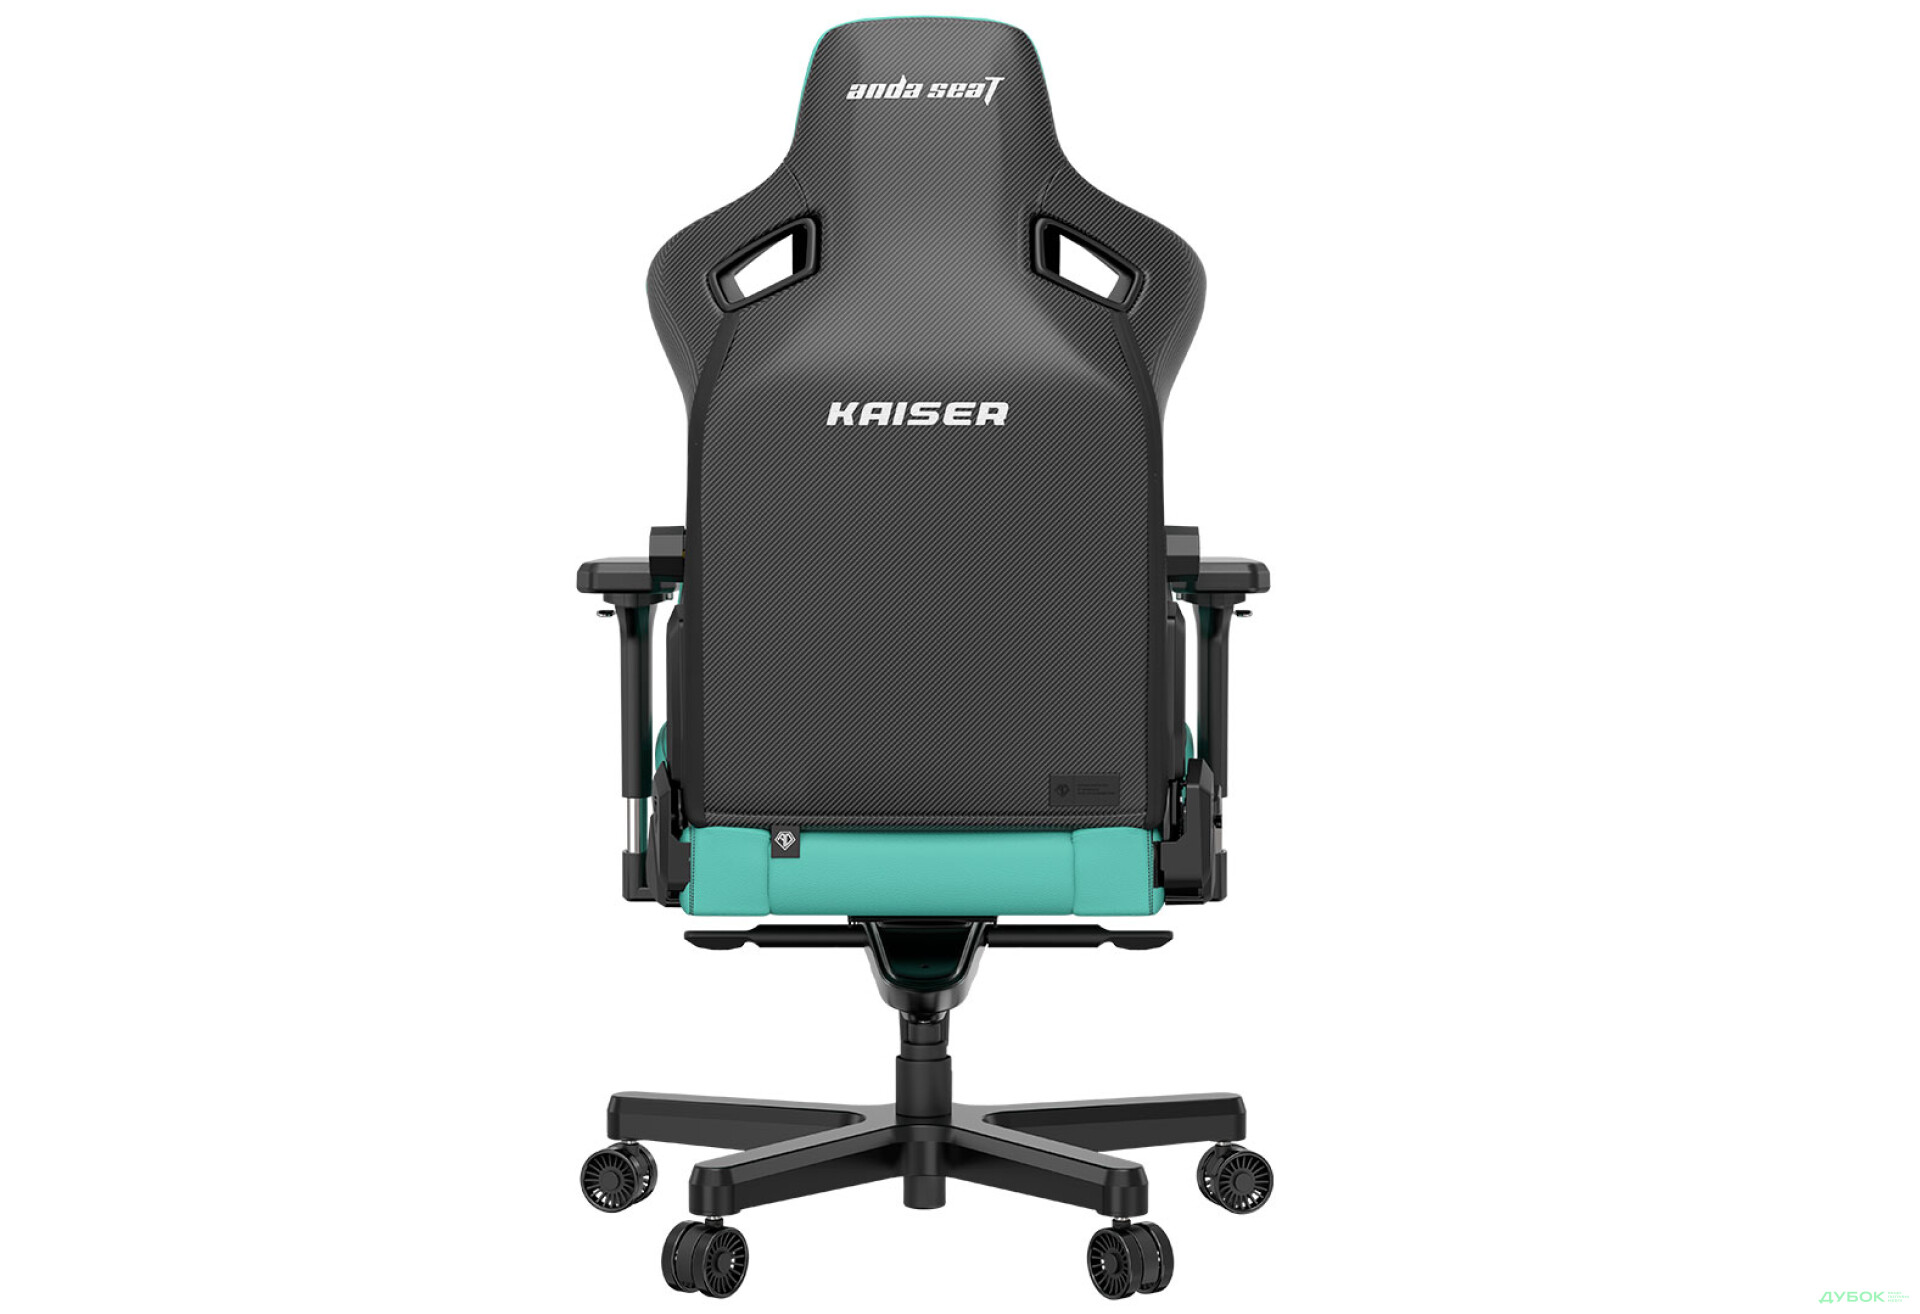 Фото 5 - Компьютерное кресло Anda Seat Kaiser 3 72x57x136 см игровое, зеленое